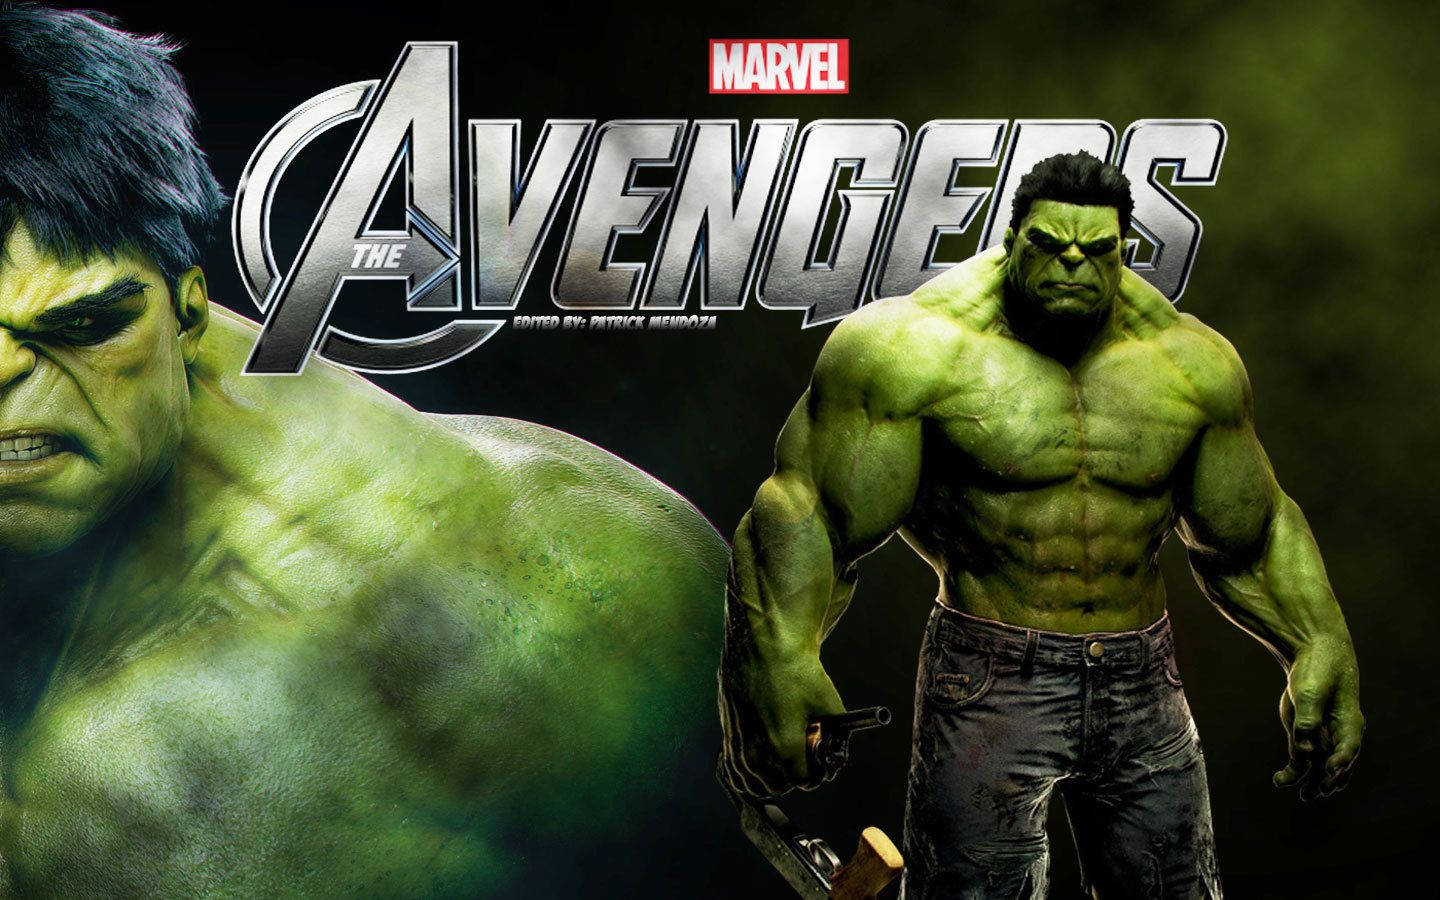 Marvel The Hulk Avengers Background